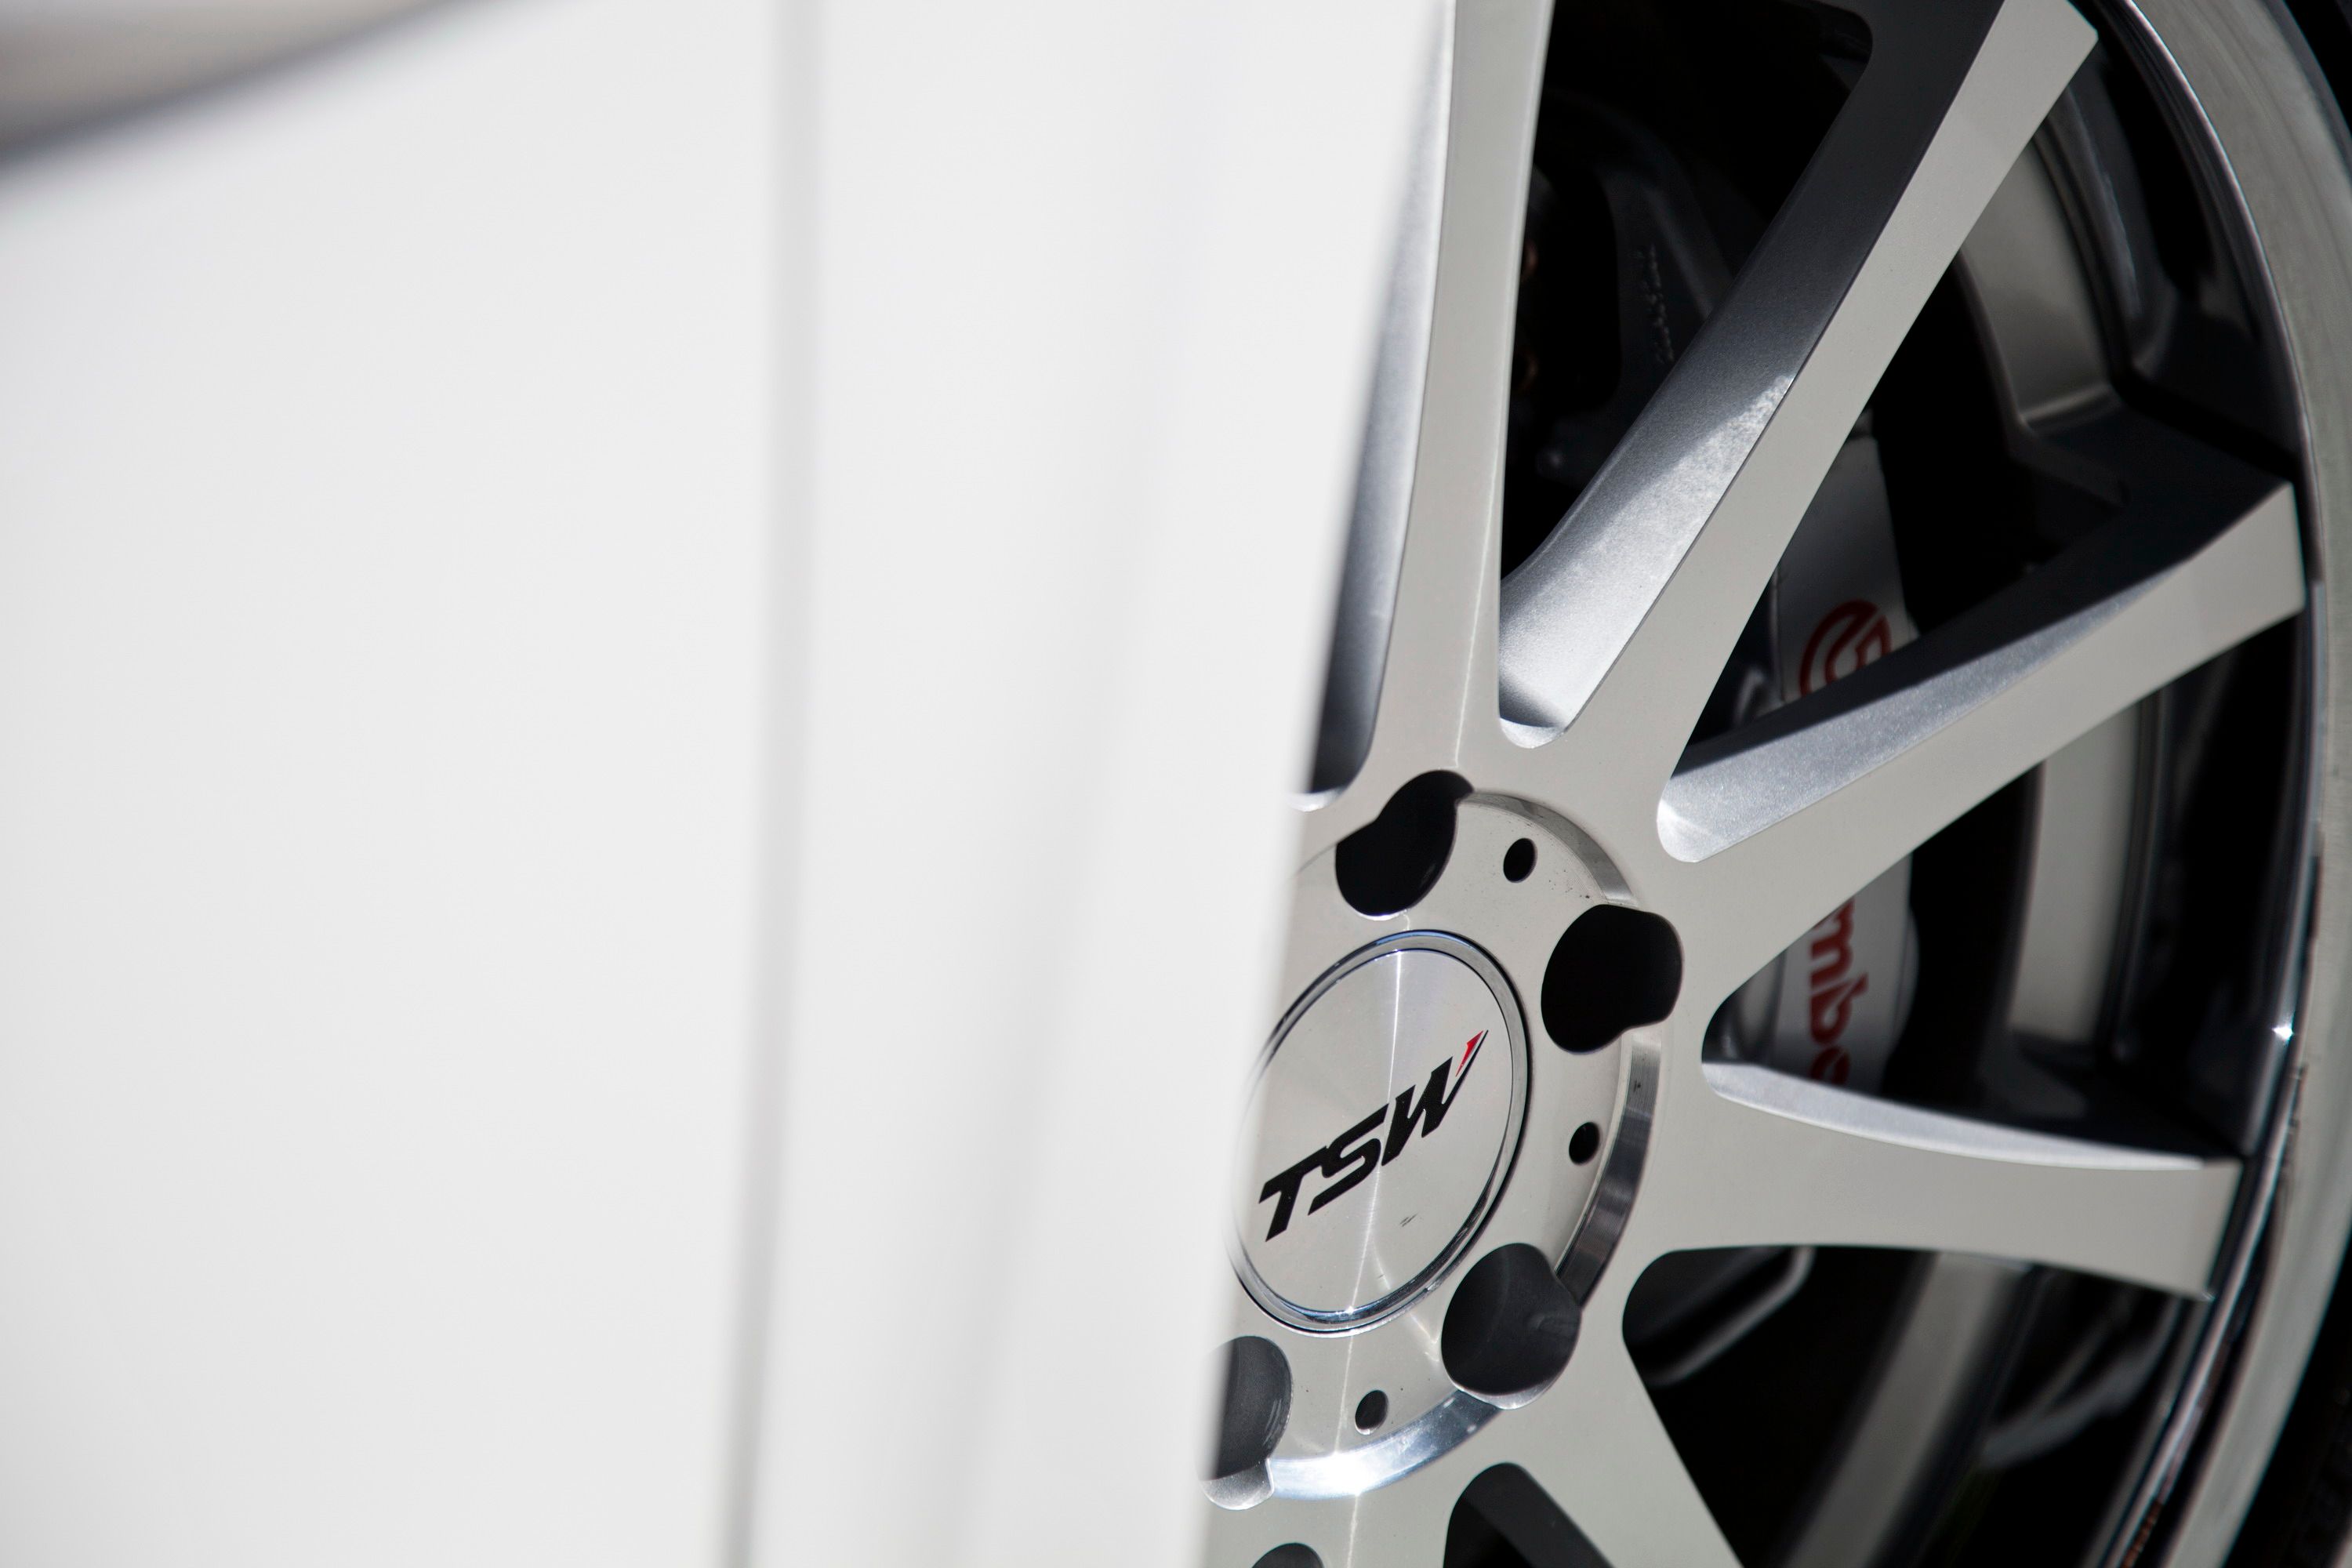 2014 Volkswagen Jetta Racer's Dream